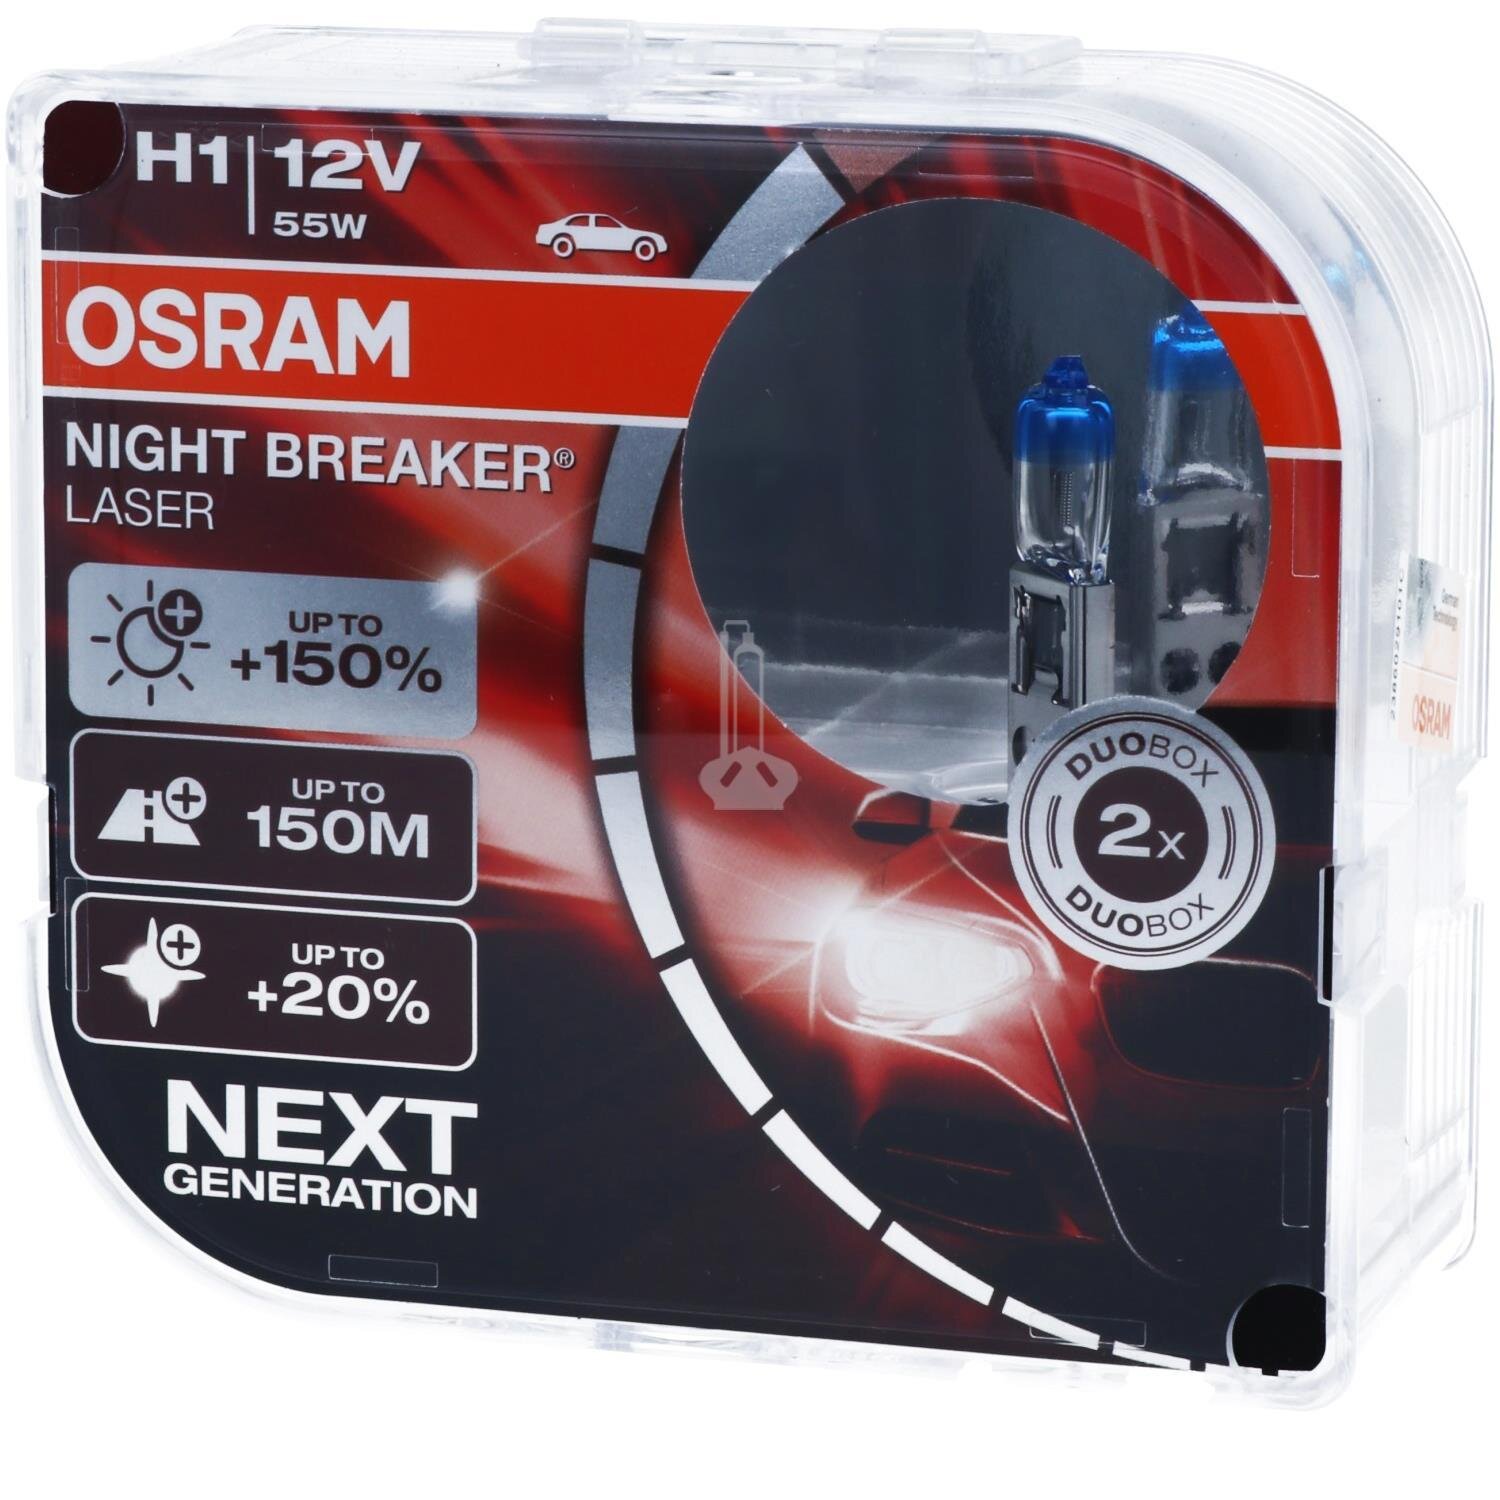 OSRAM Night Breaker LASER Next Generation, 13,80 €